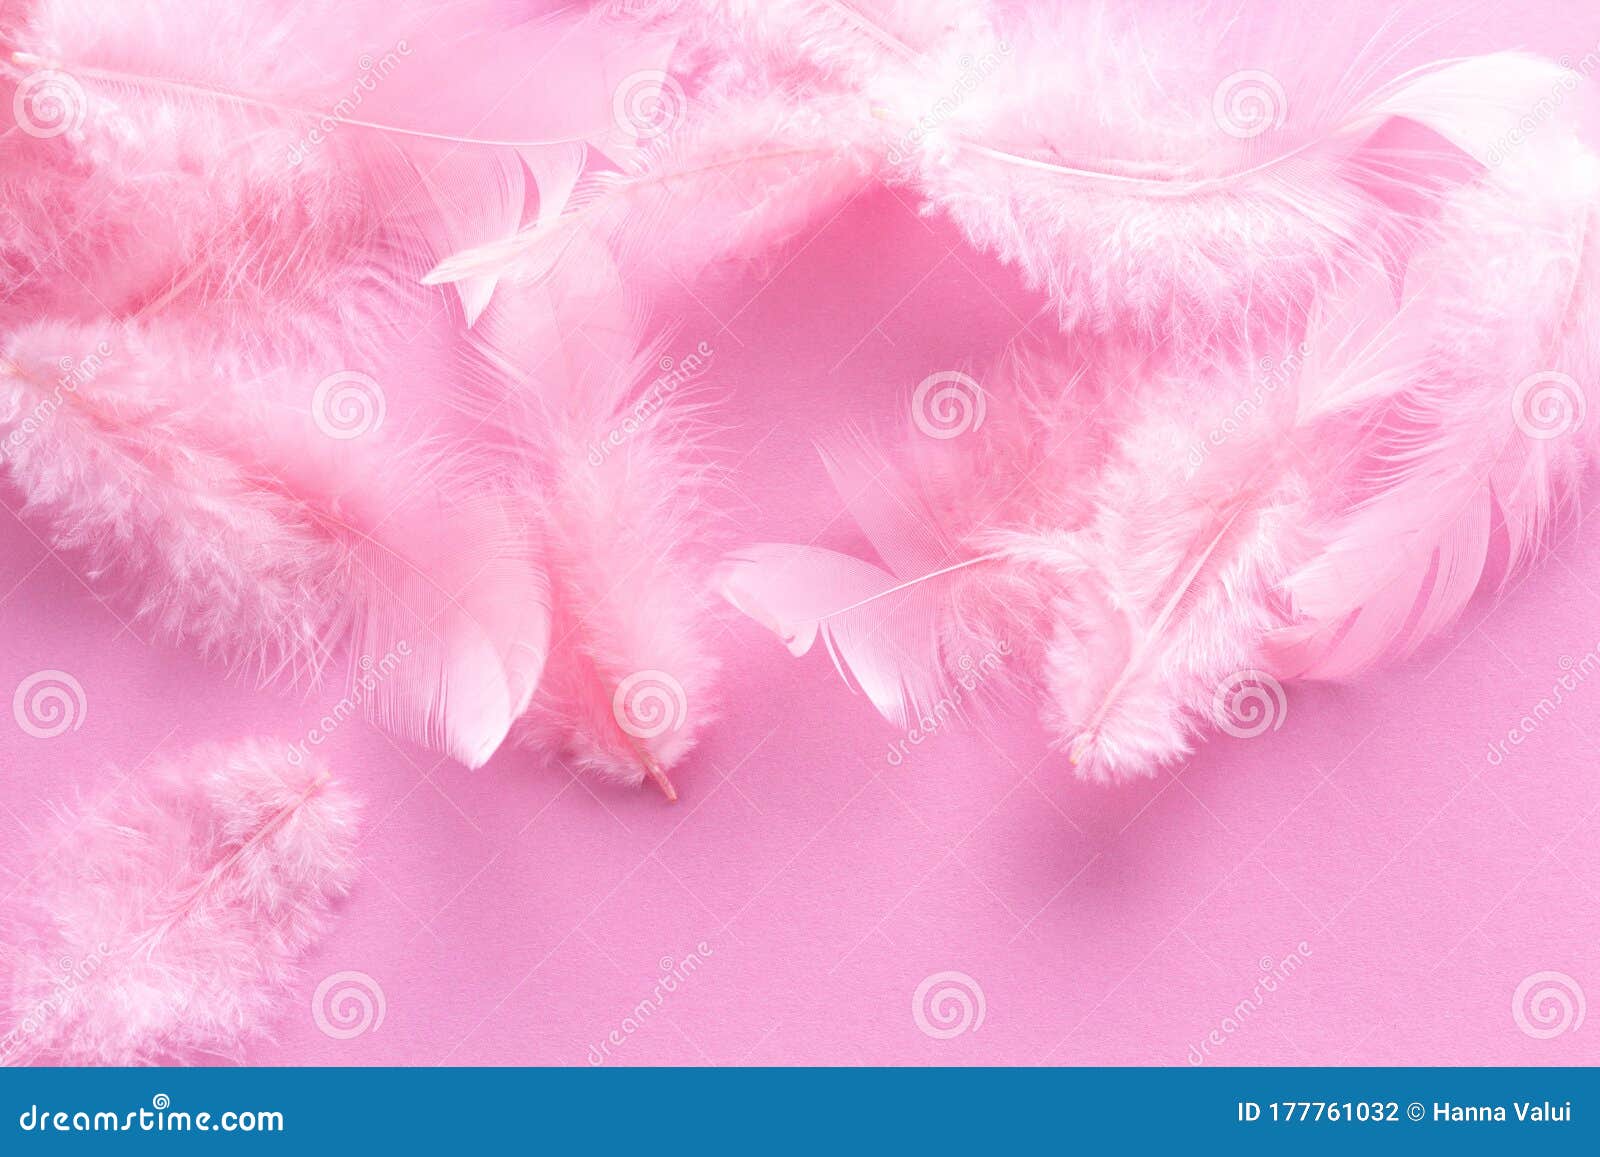 Plumas De Color Rosa De Coral Suave Y Esponjoso Sobre Fondo Rosa Pastel.  Estilo Minimalista. Tendencia Vintage. Fondo De Textura D Foto de archivo -  Imagen de ornamento, hermoso: 177761032